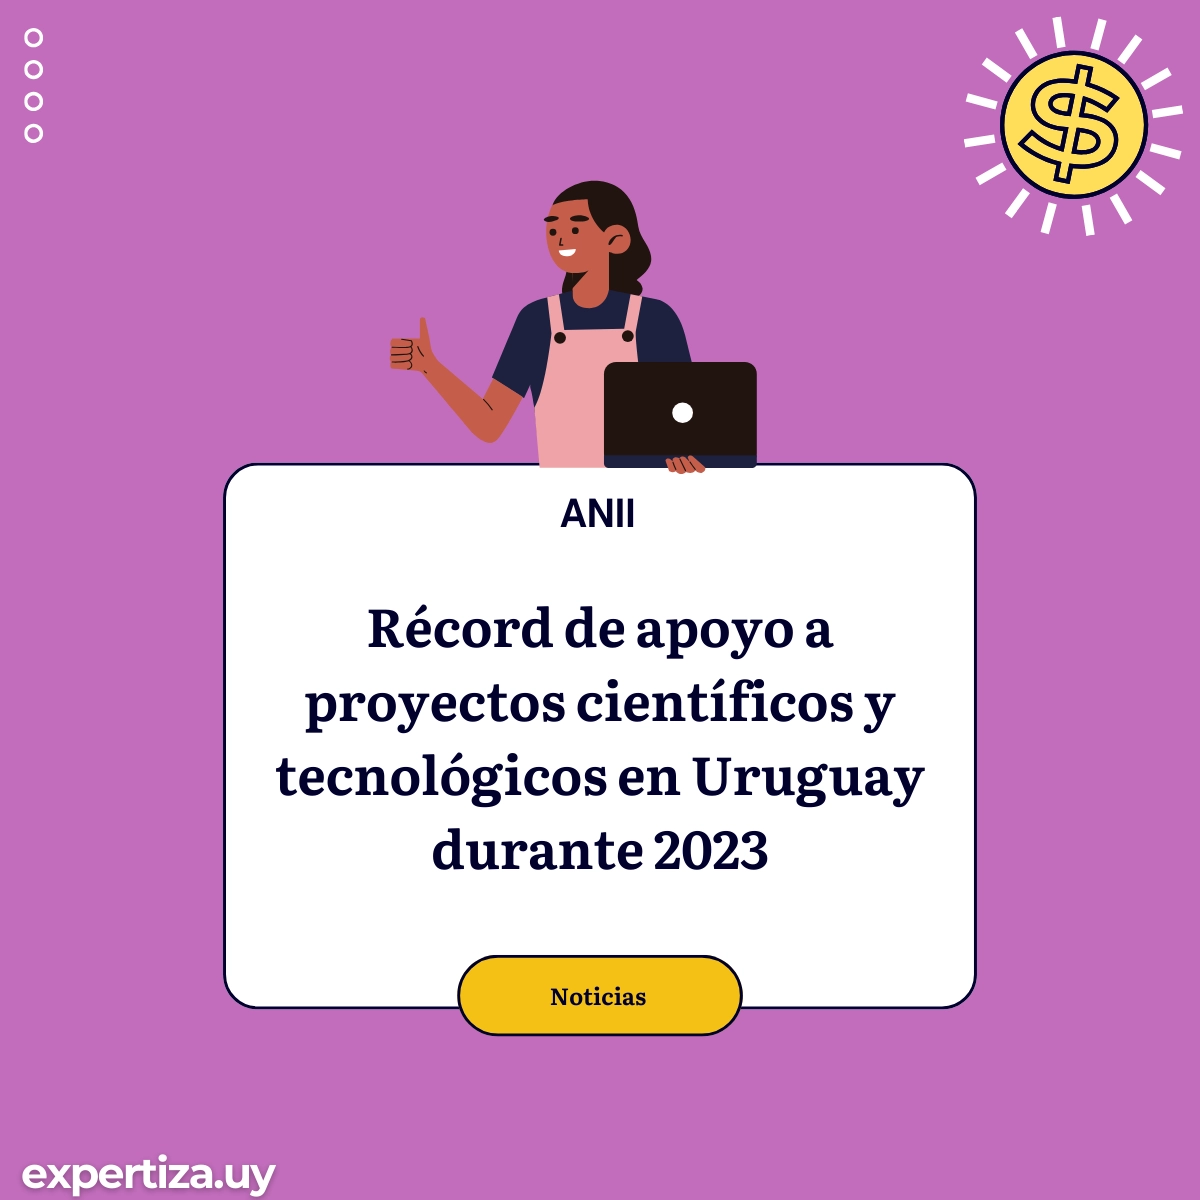 Récord de apoyo a proyectos científicos y tecnológicos en Uruguay durante 2023.